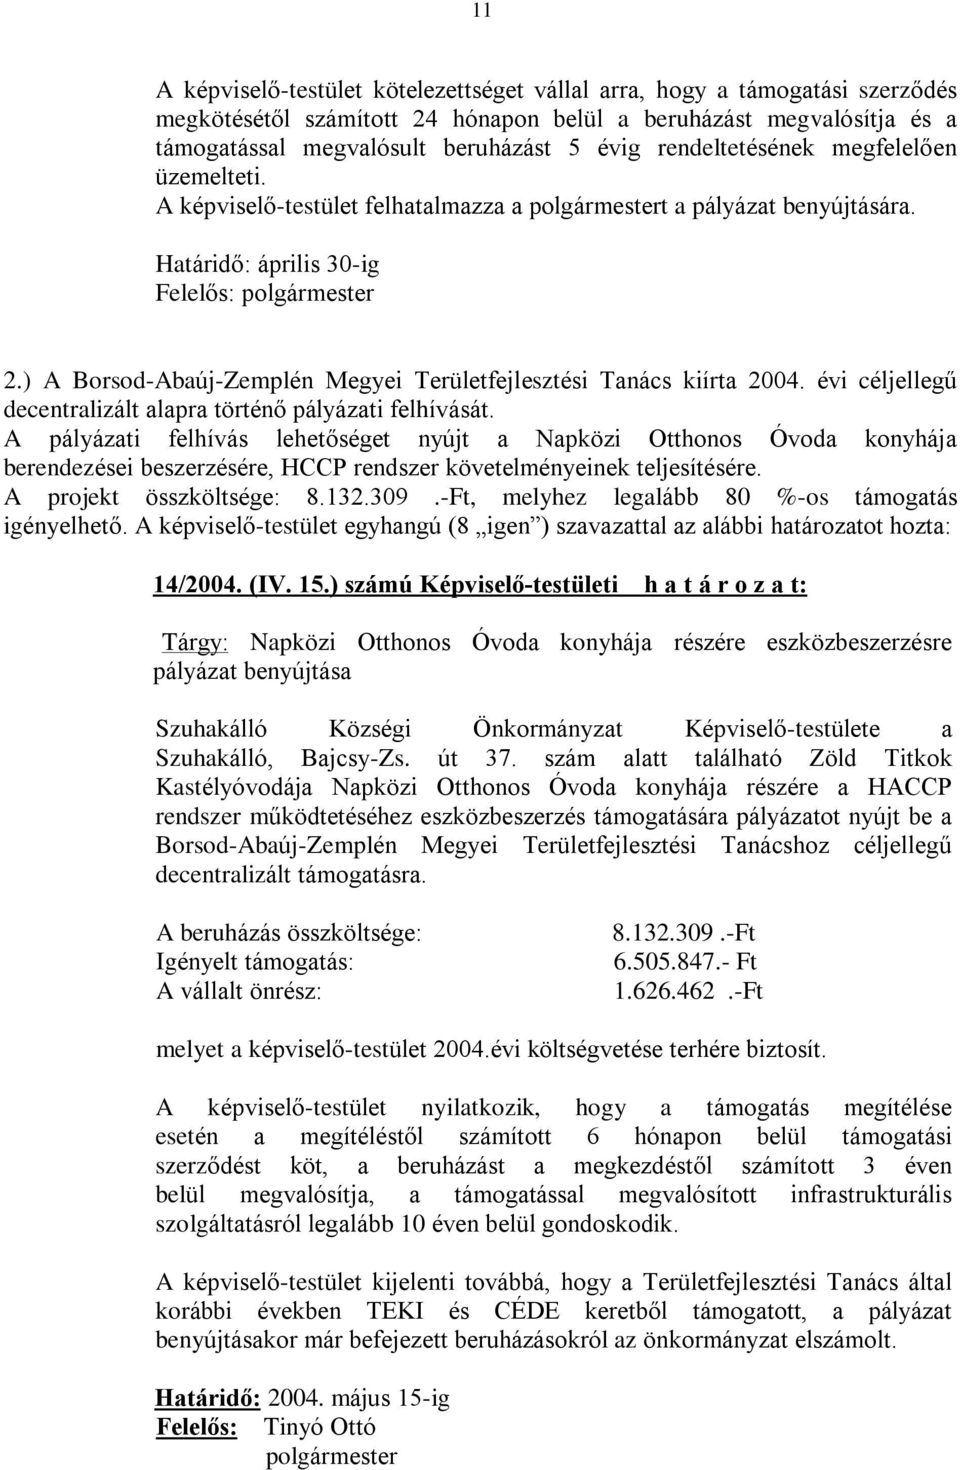 ) A Borsod-Abaúj-Zemplén Megyei Területfejlesztési Tanács kiírta 2004. évi céljellegû decentralizált alapra történõ pályázati felhívását.